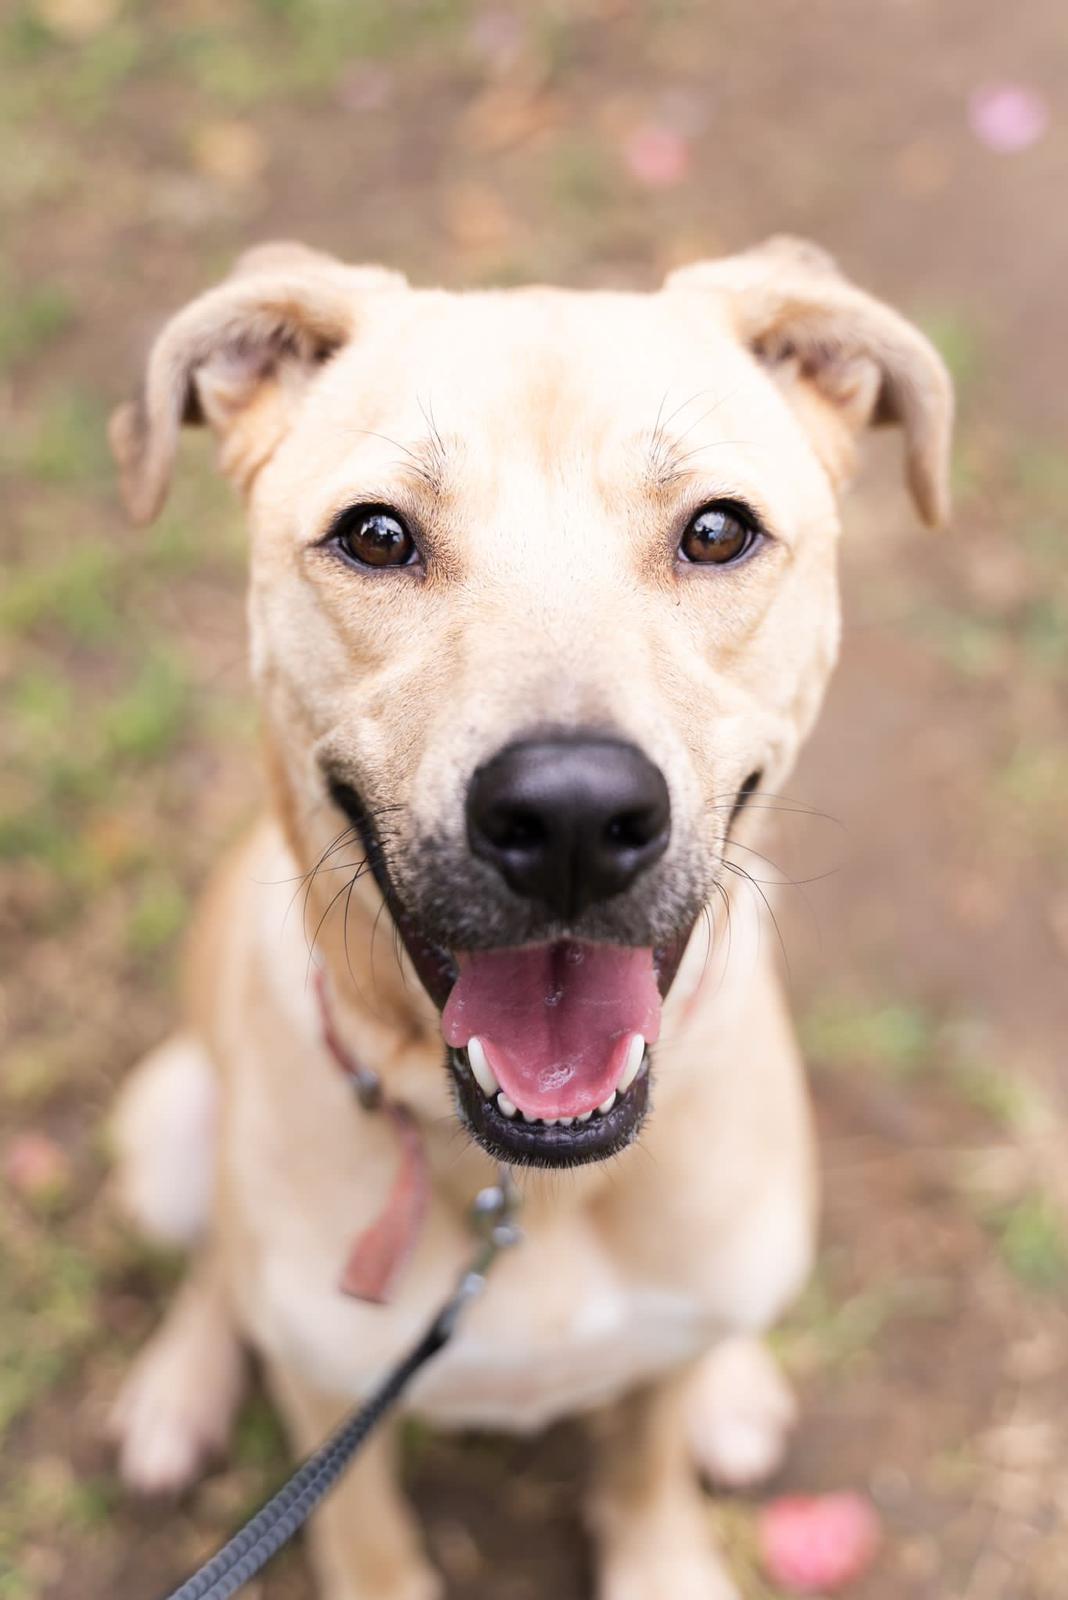 שירות חדש לבעלי הכלבים: מערכת מקוונת לקביעת תורים לחיסוני כלבת